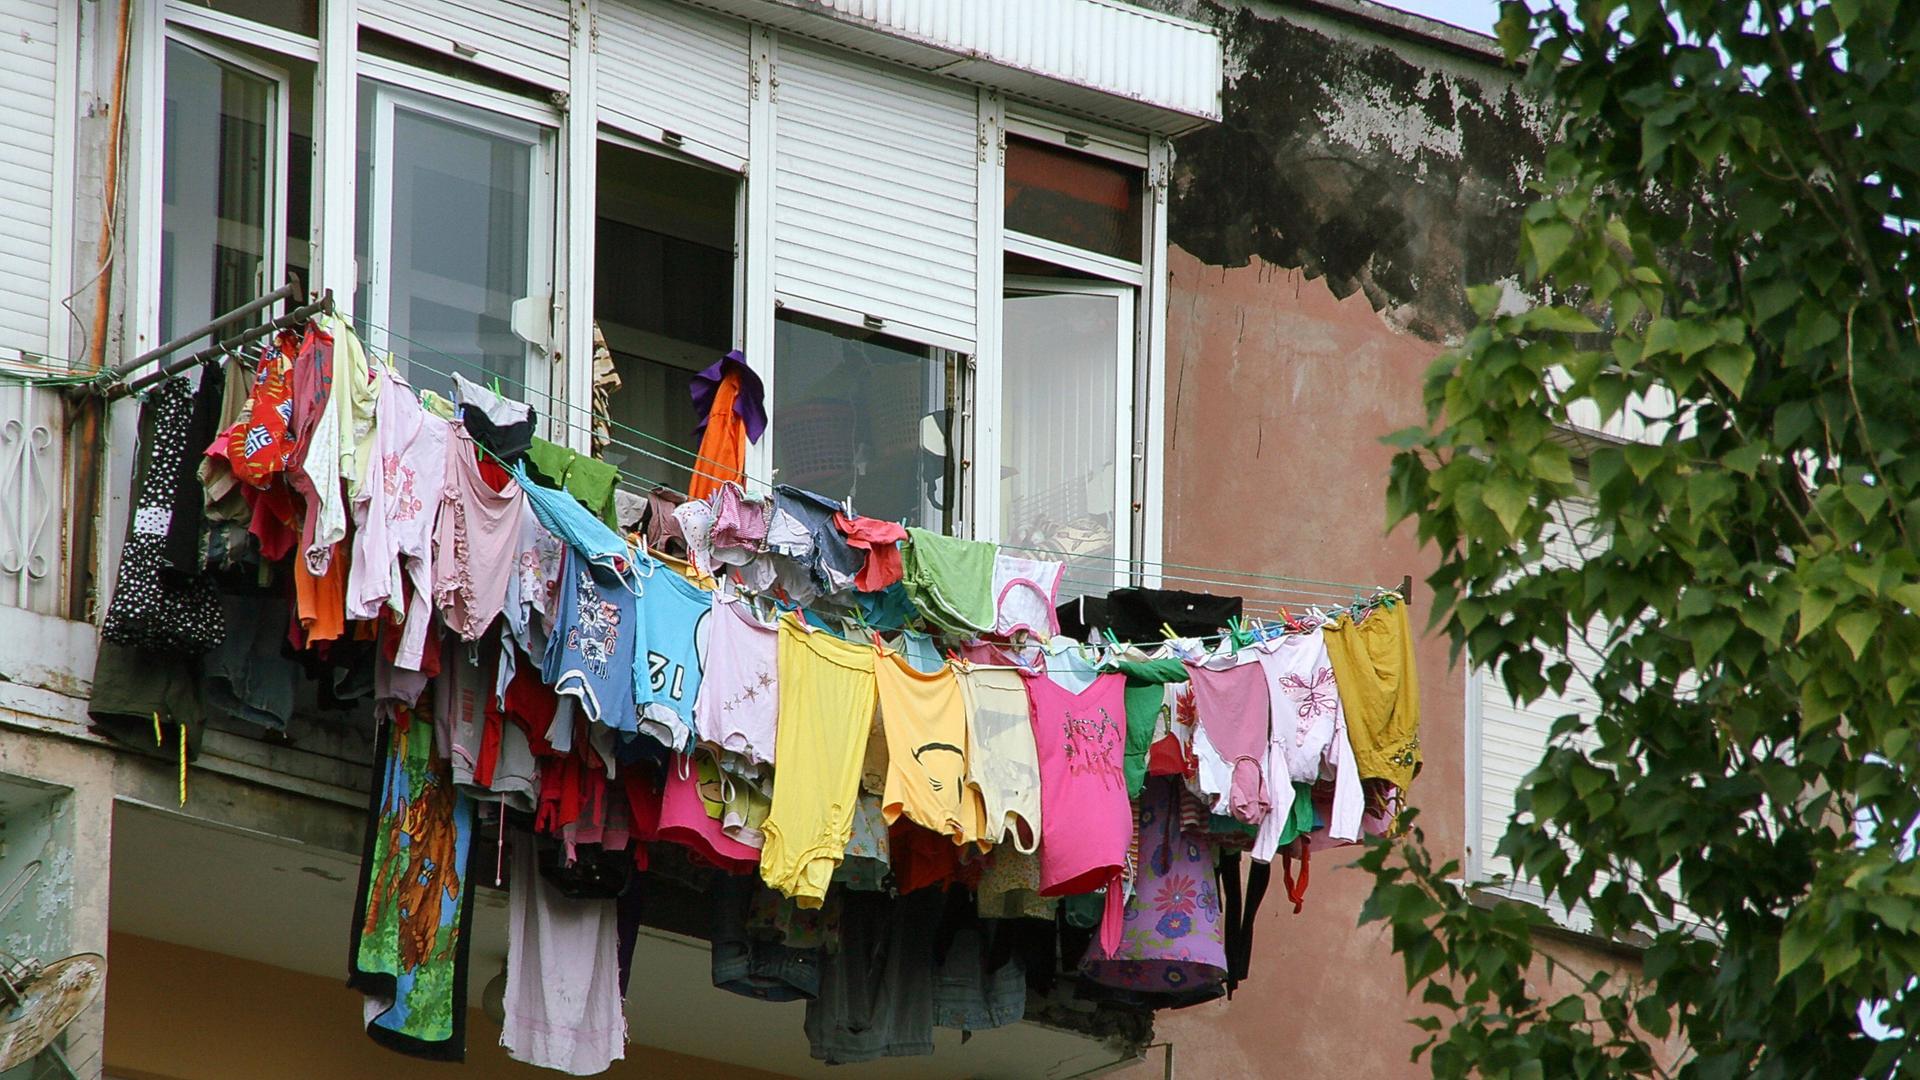 Mehrere Wäscheleinen voll beladen mit bunter Wäsche sind in der Höhe an einem Fenster befestigt.